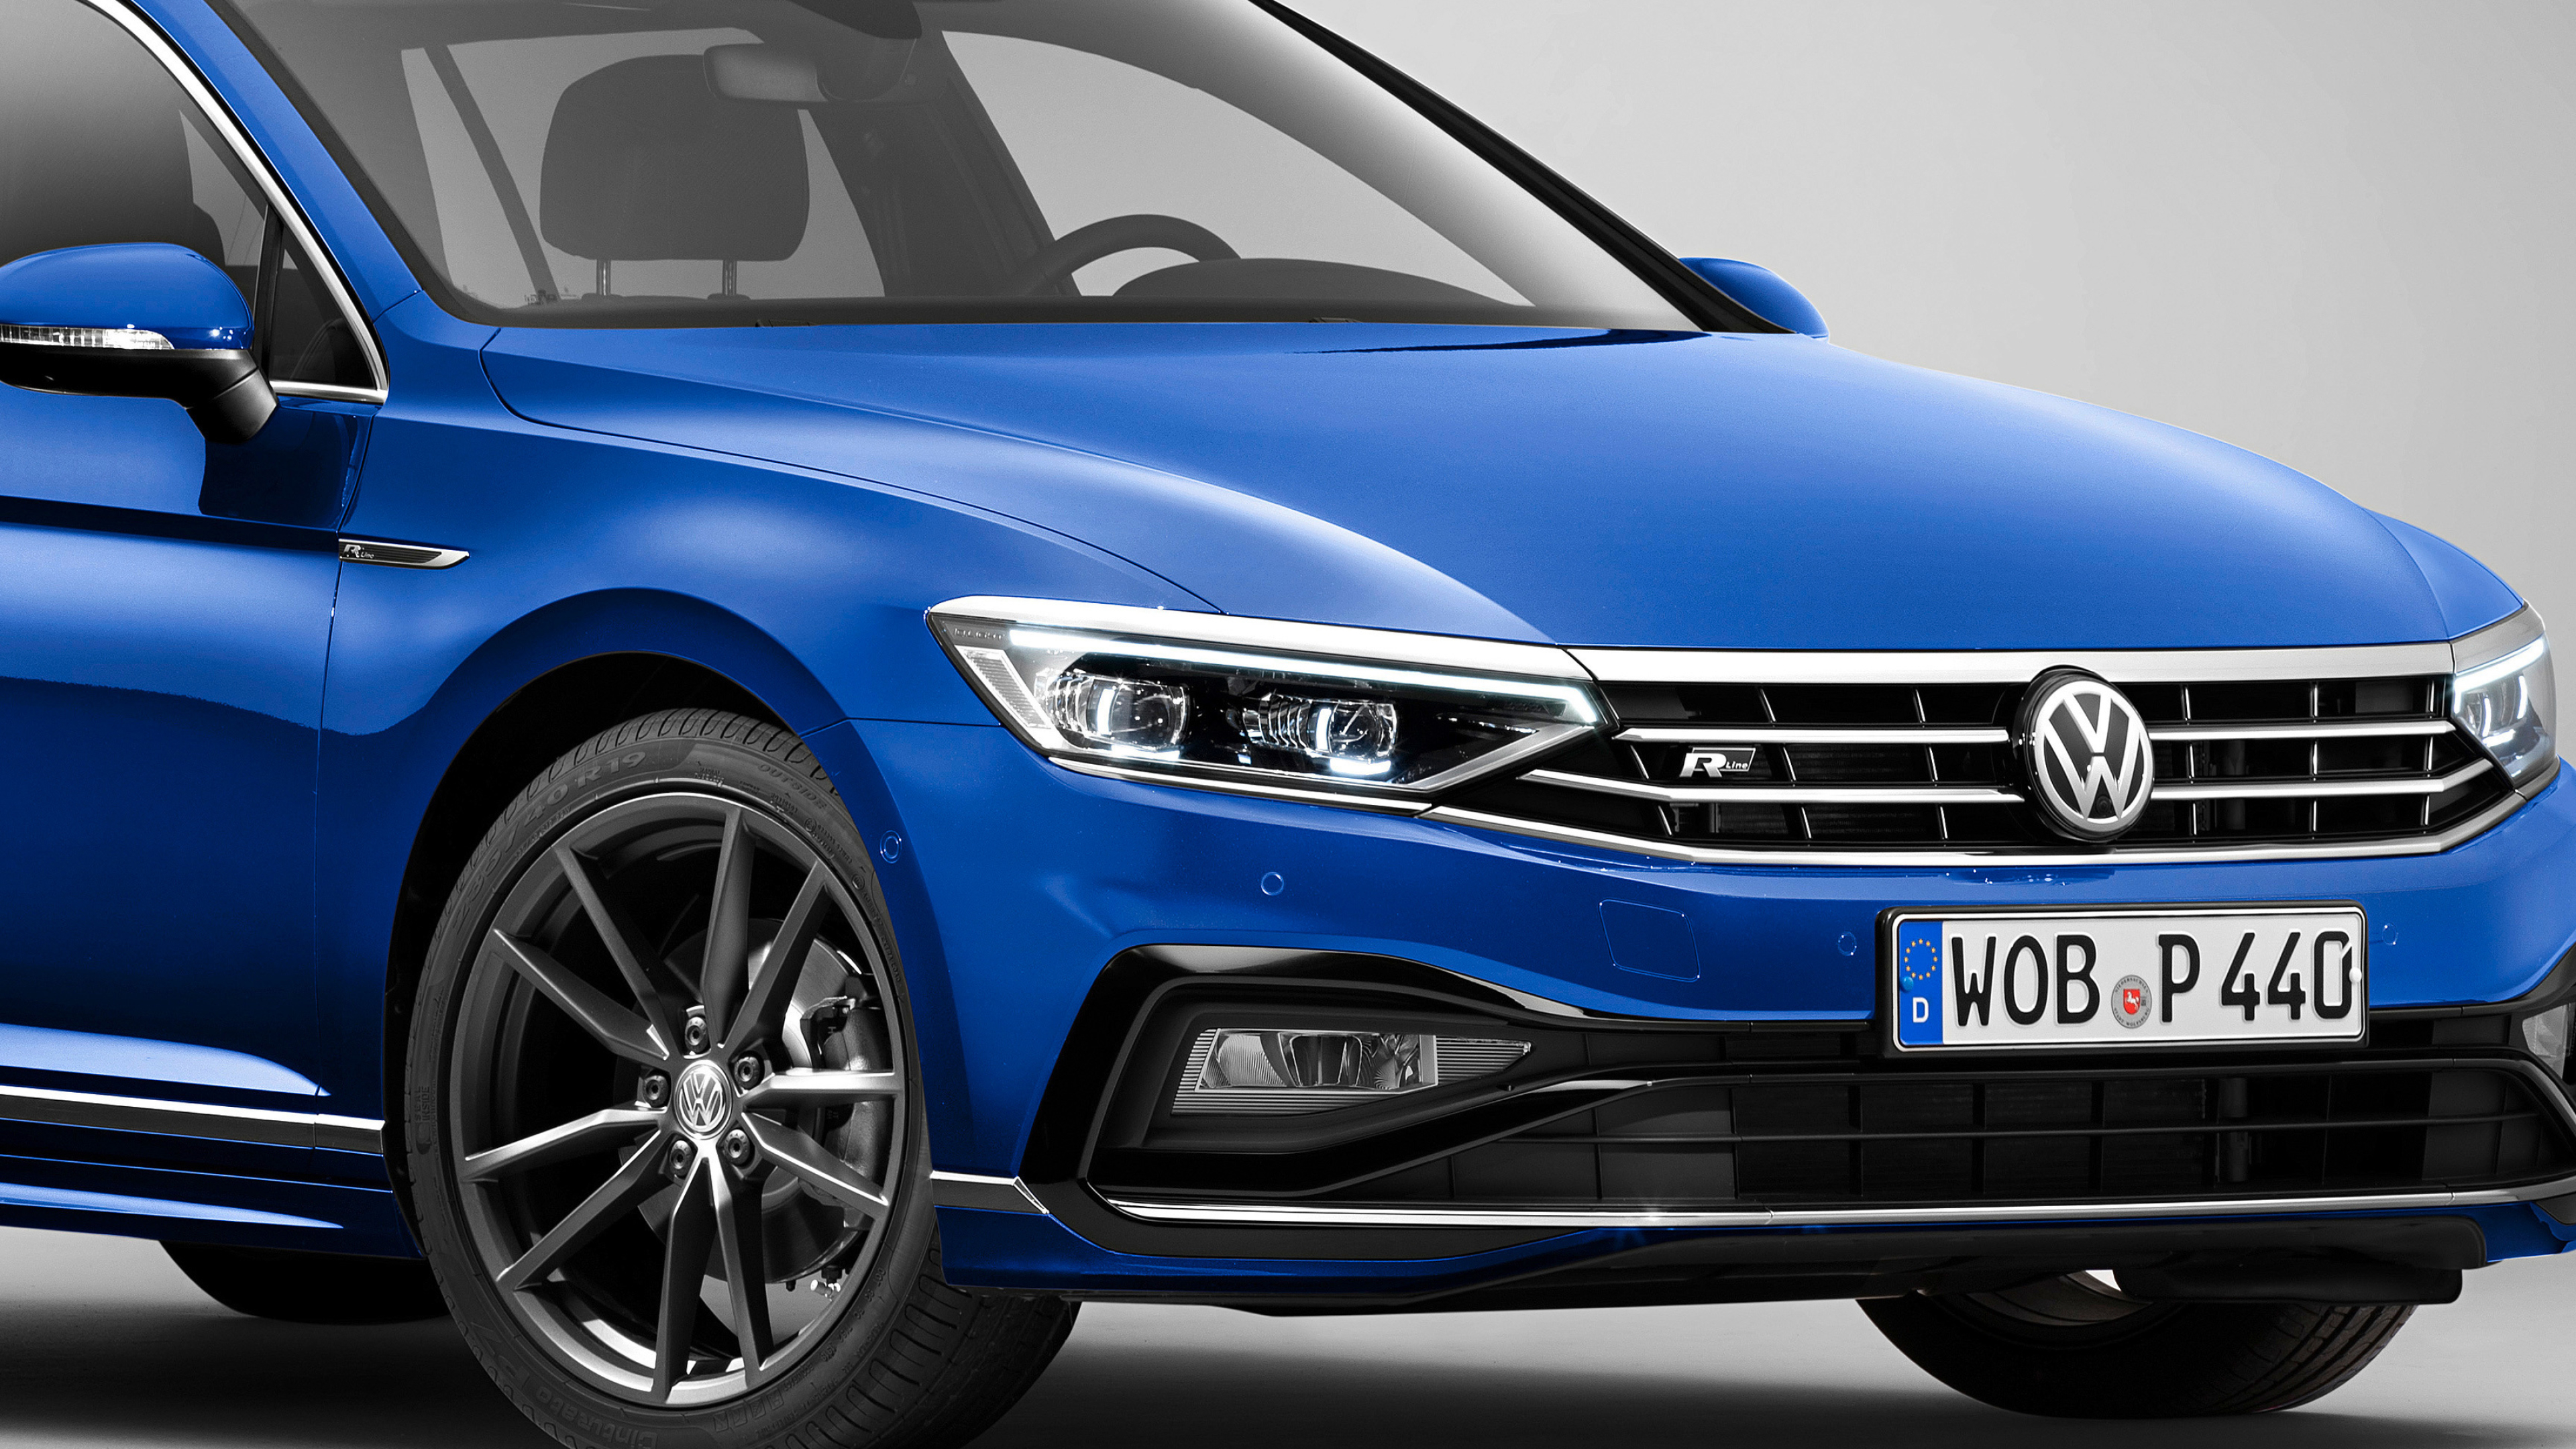 Volkswagen Passat, Auto industry, R-Line model, Stunning visuals, 3840x2160 4K Desktop